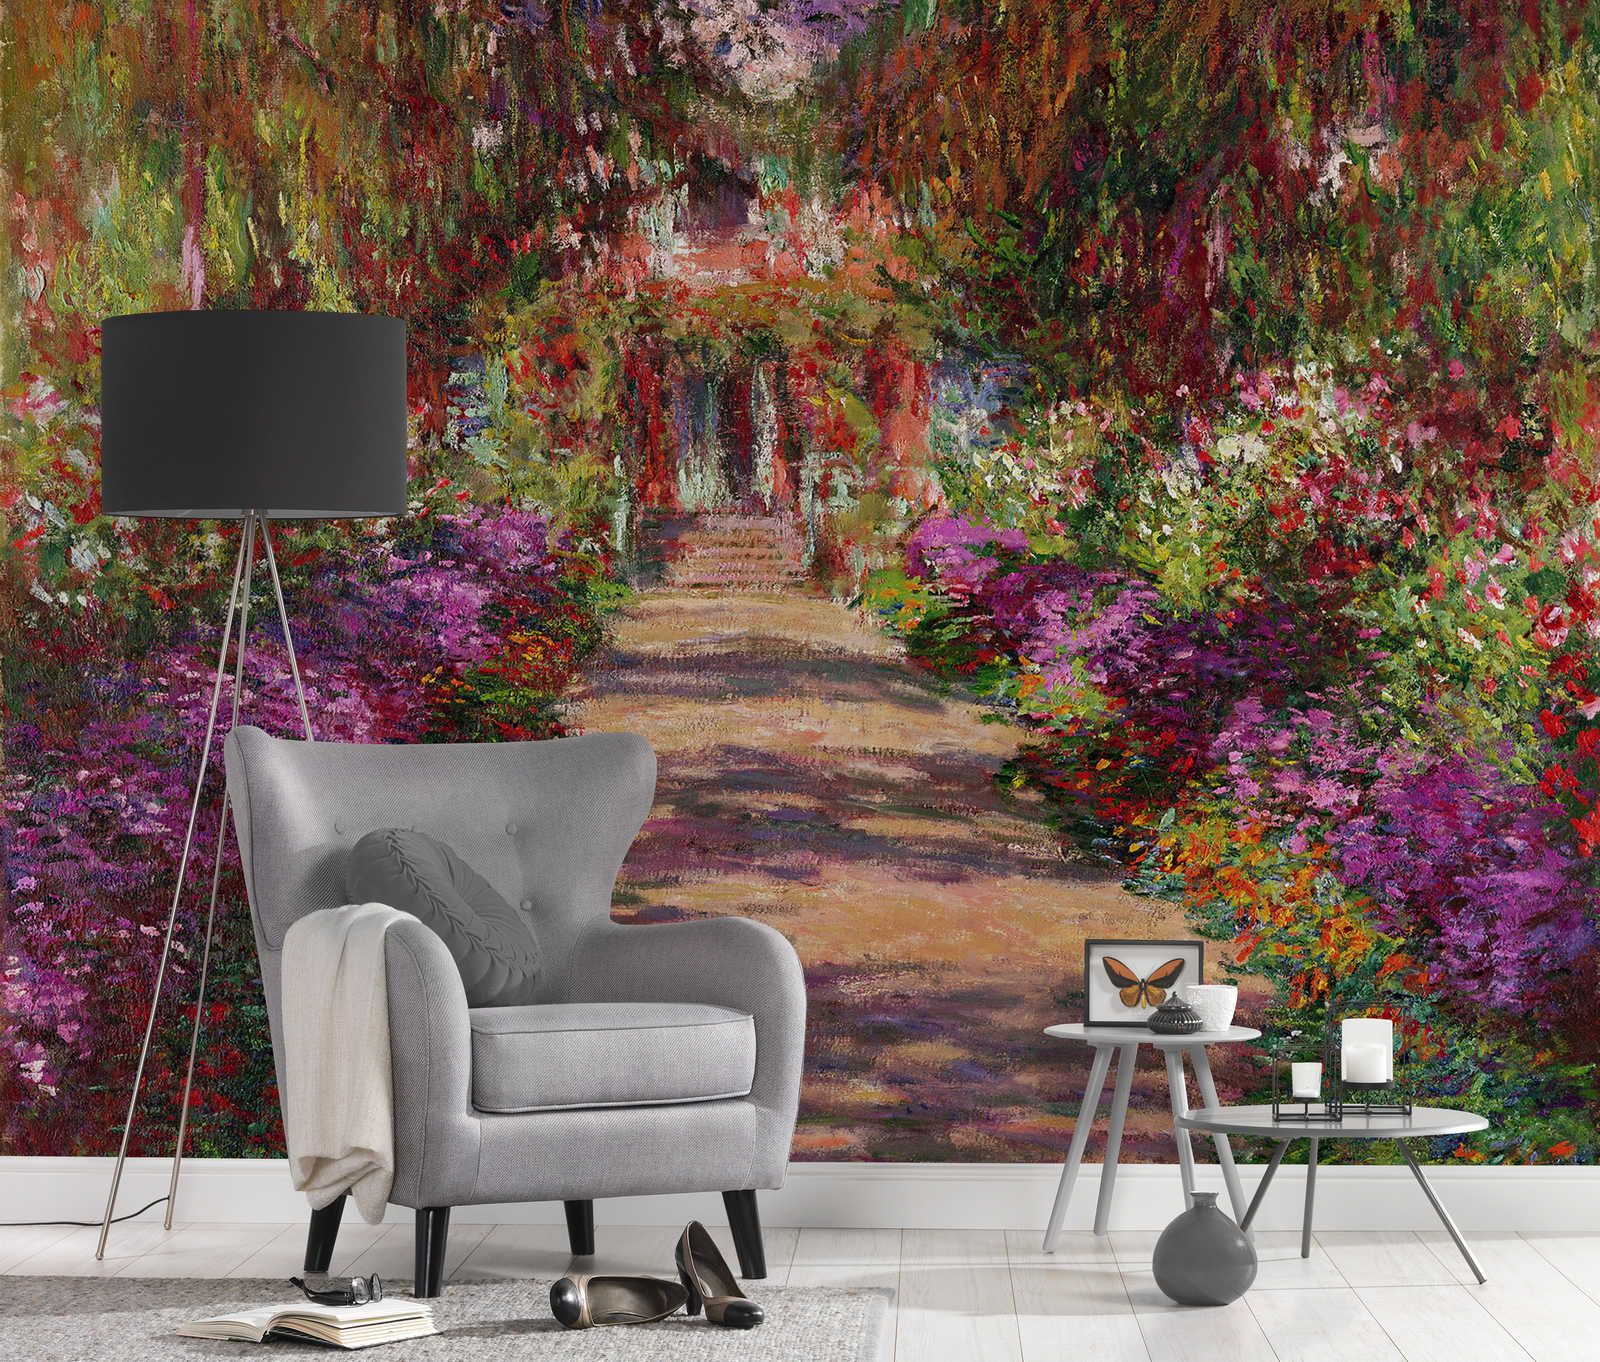             Mural "Camino del jardín de Giverny" de Claude Monet
        